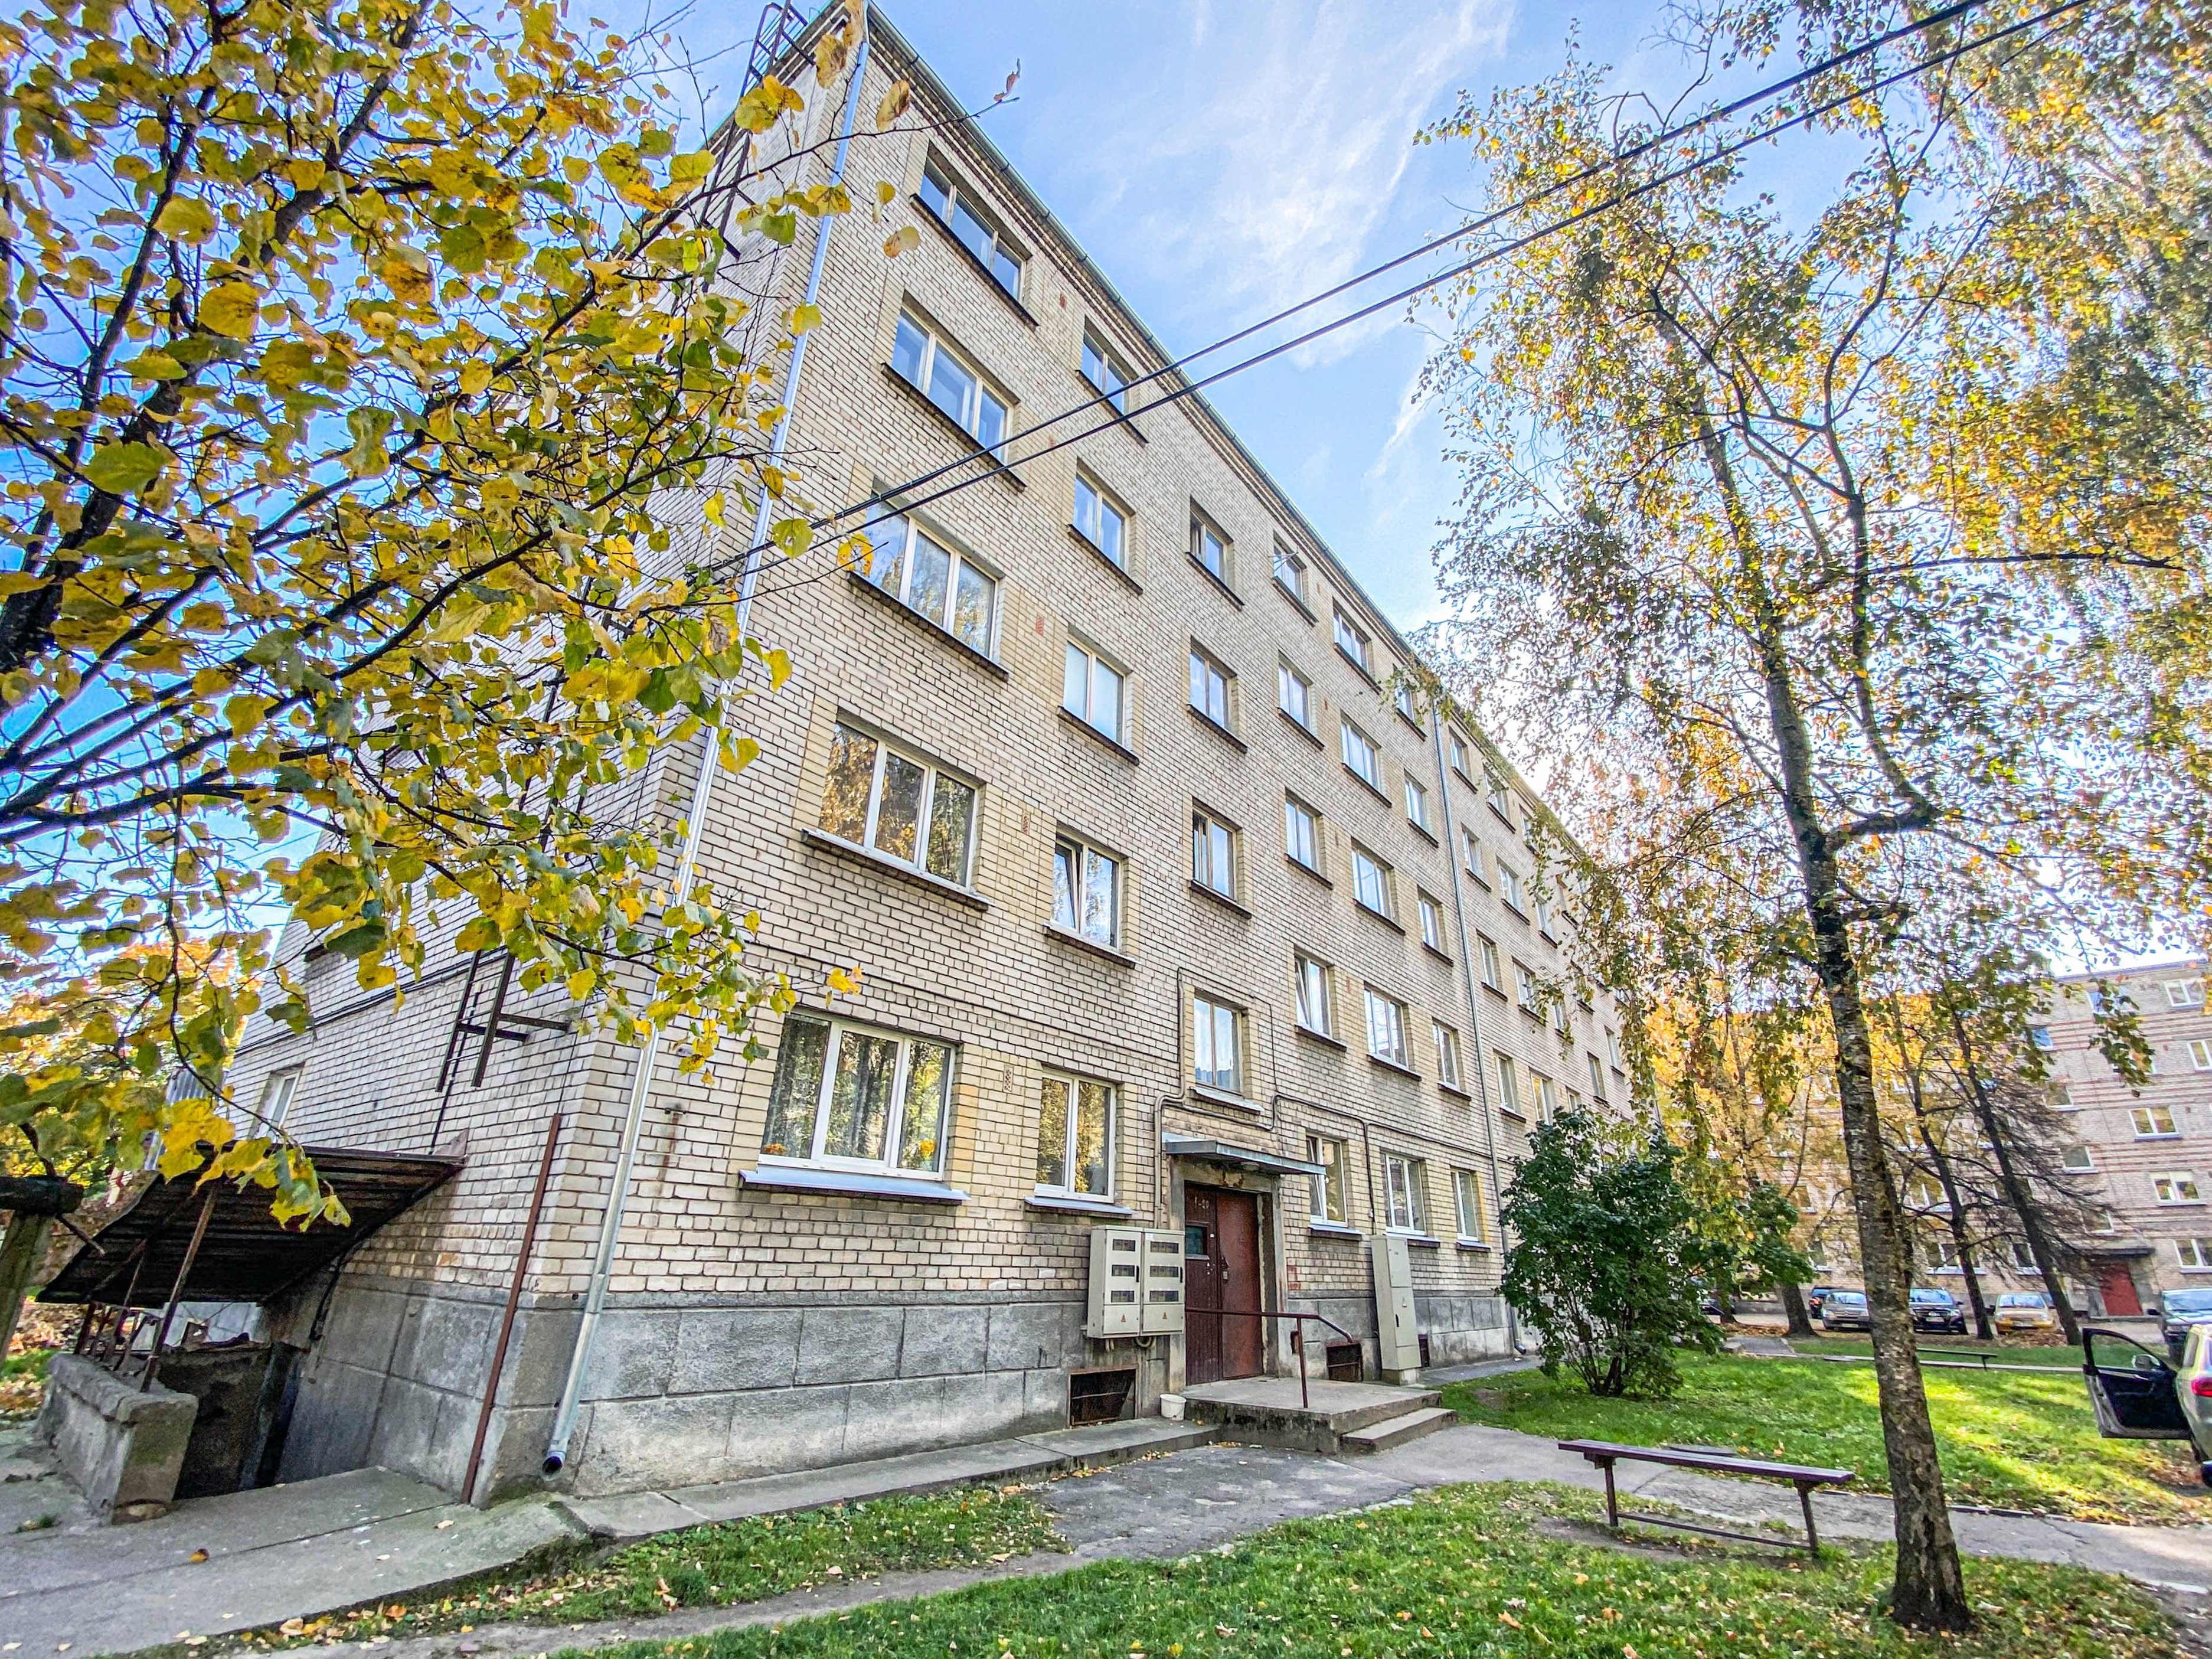 Apartment for sale, Lielā street 24 - Image 1